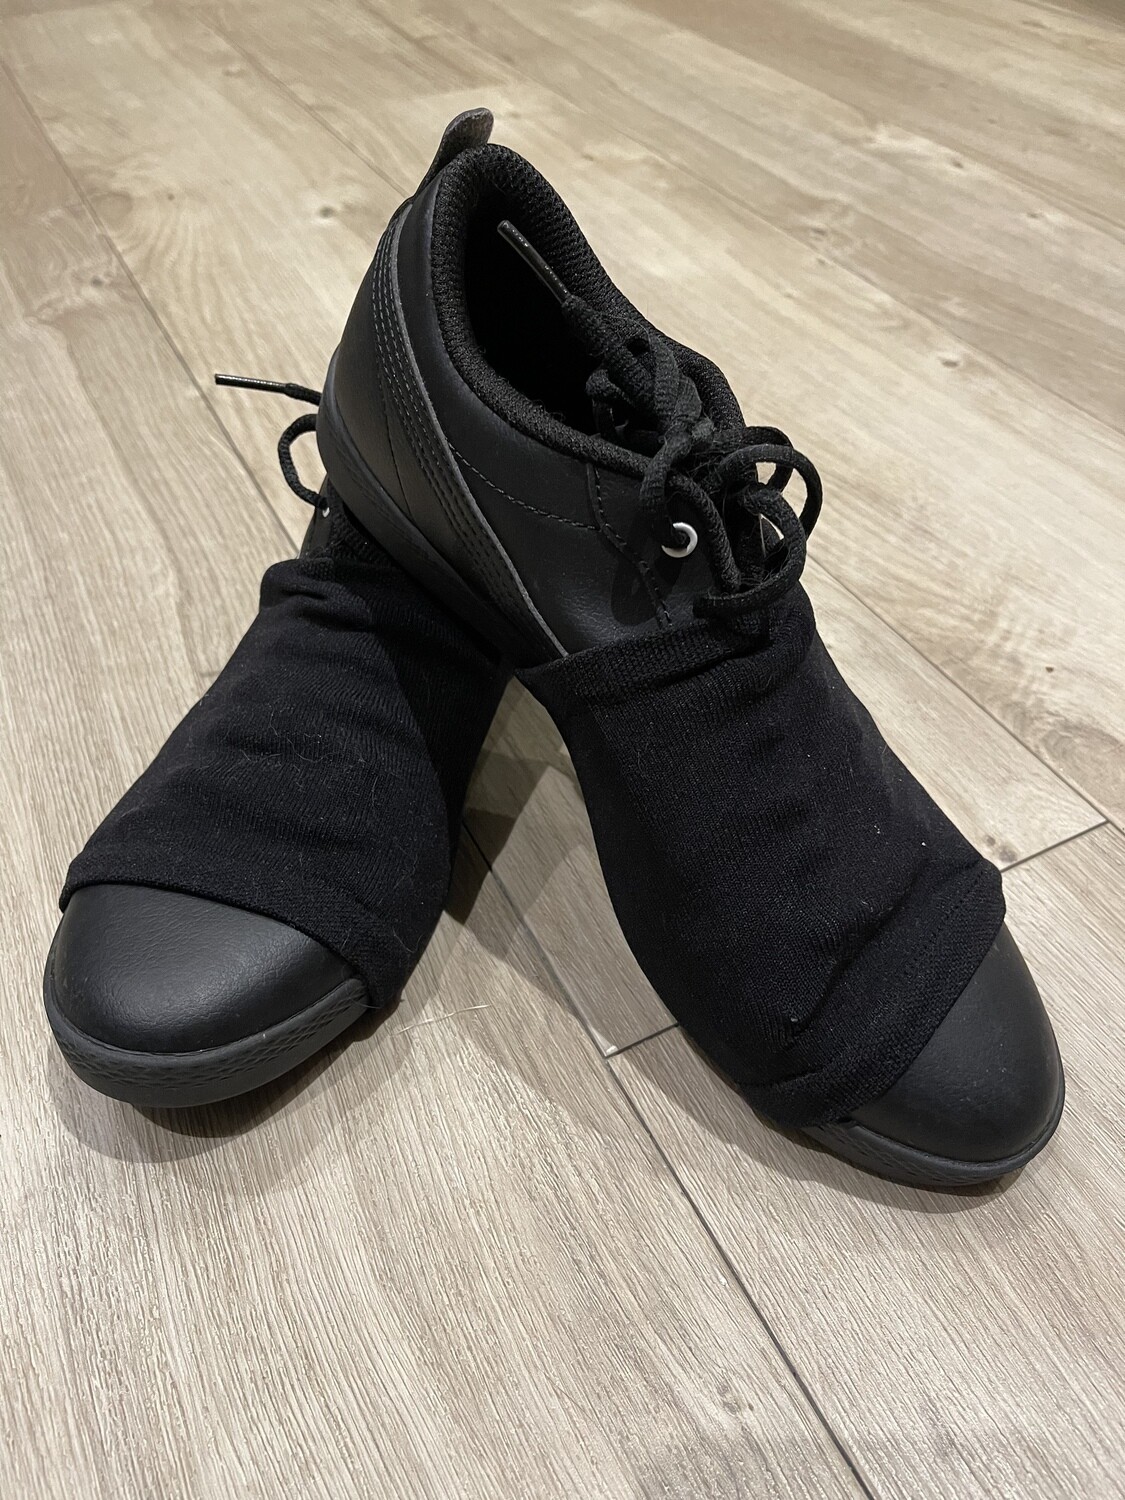 Over shoe dance socks - pack of 4